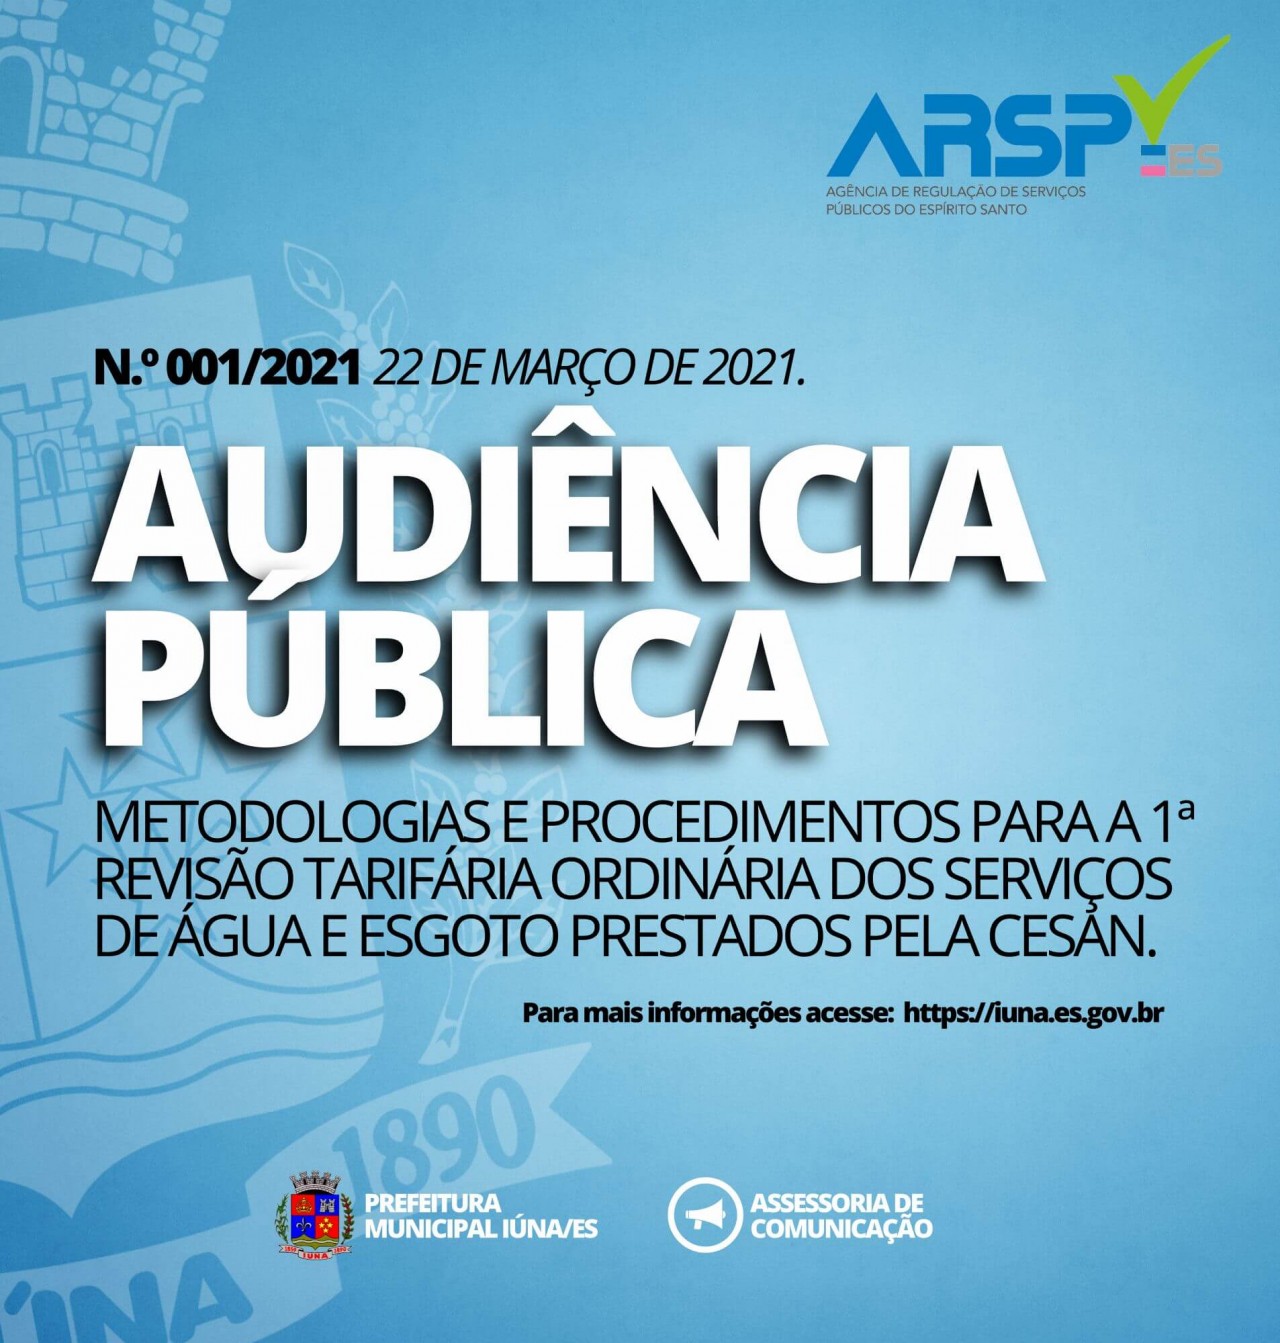 PARTICIPE: ARSP realizará Audiência Pública para apresentar metodologias de revisão das tarifas de água e esgoto.